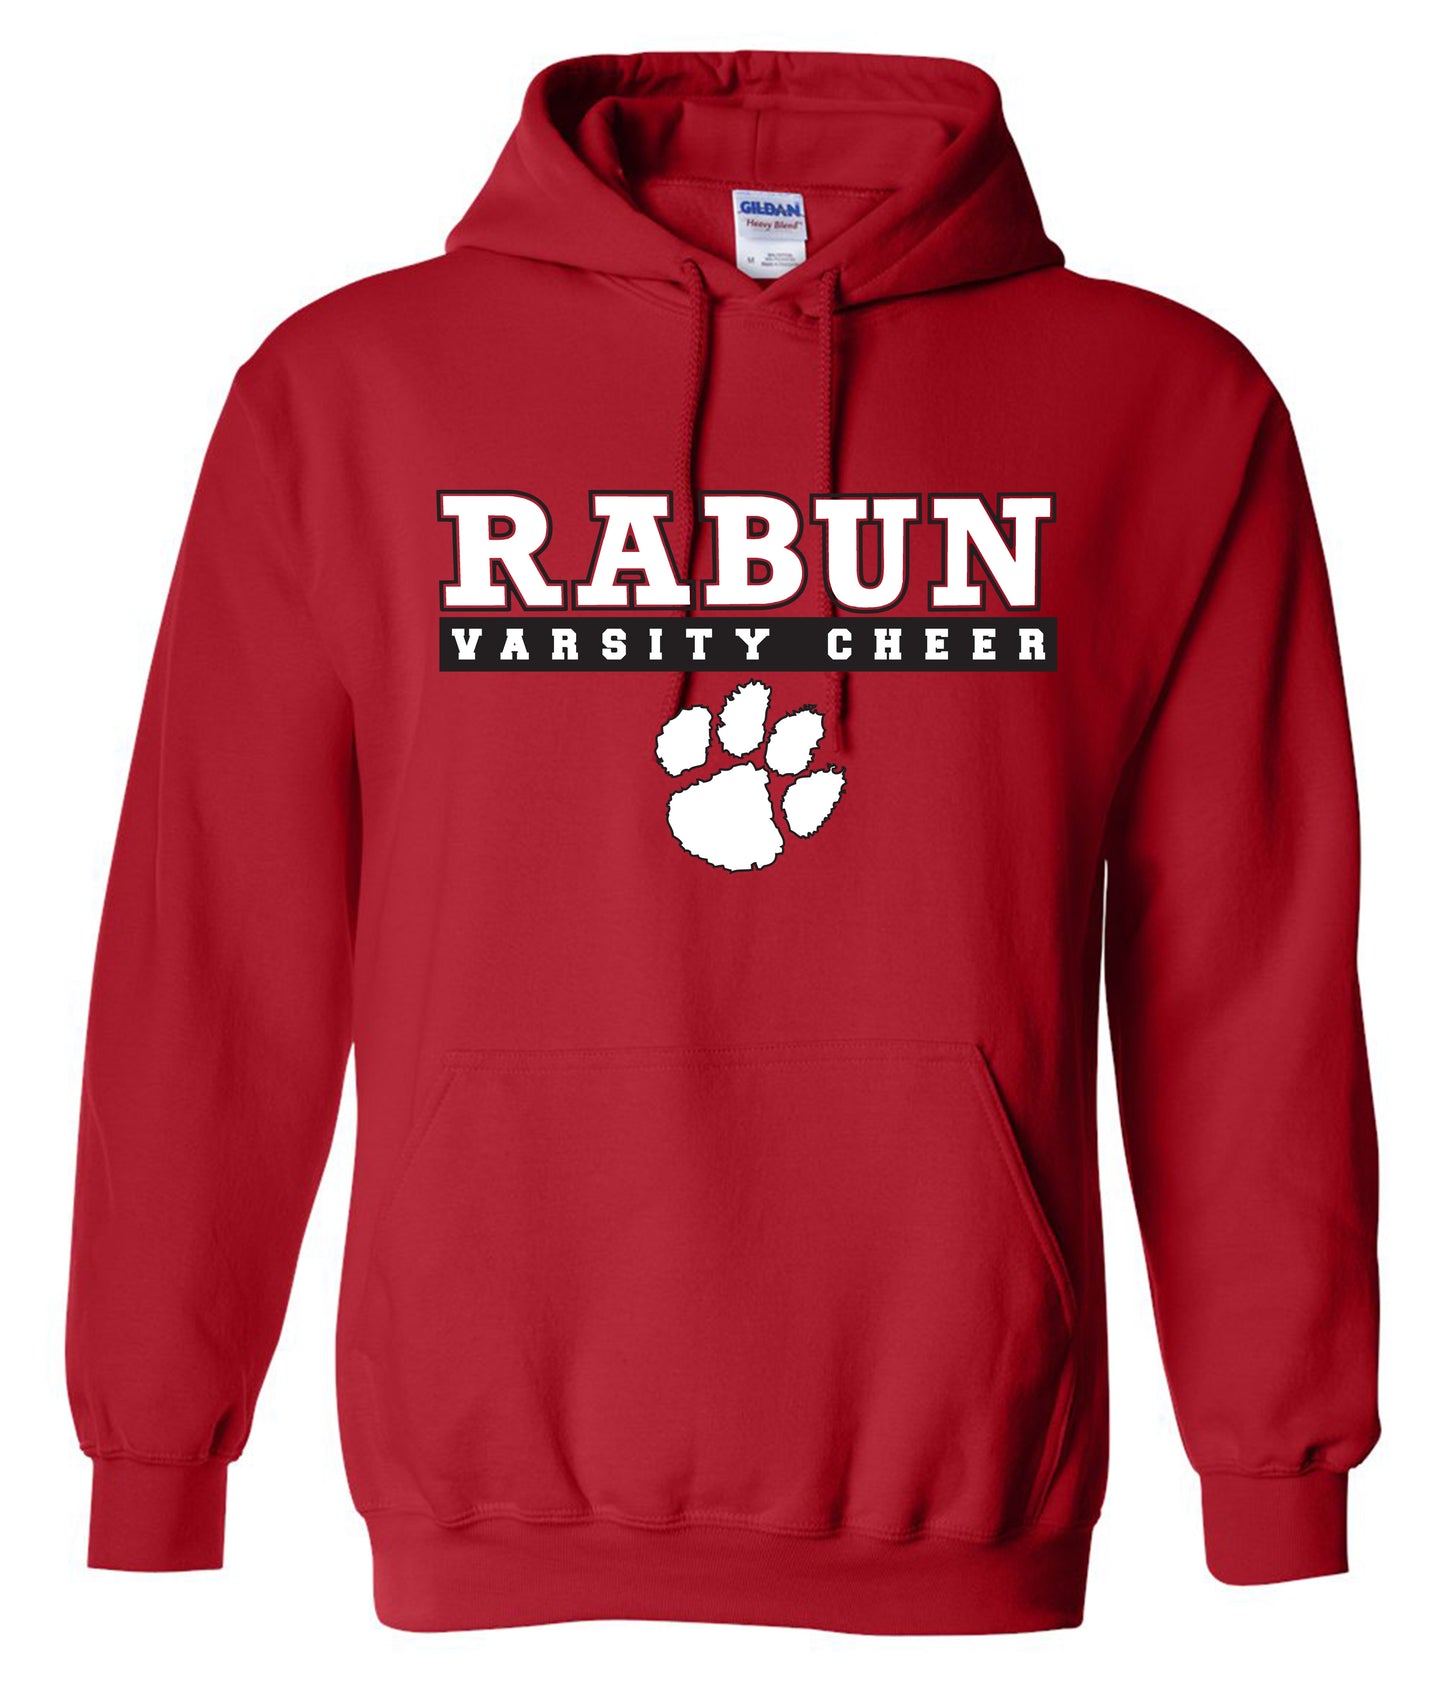 Rabun Varsity Cheer